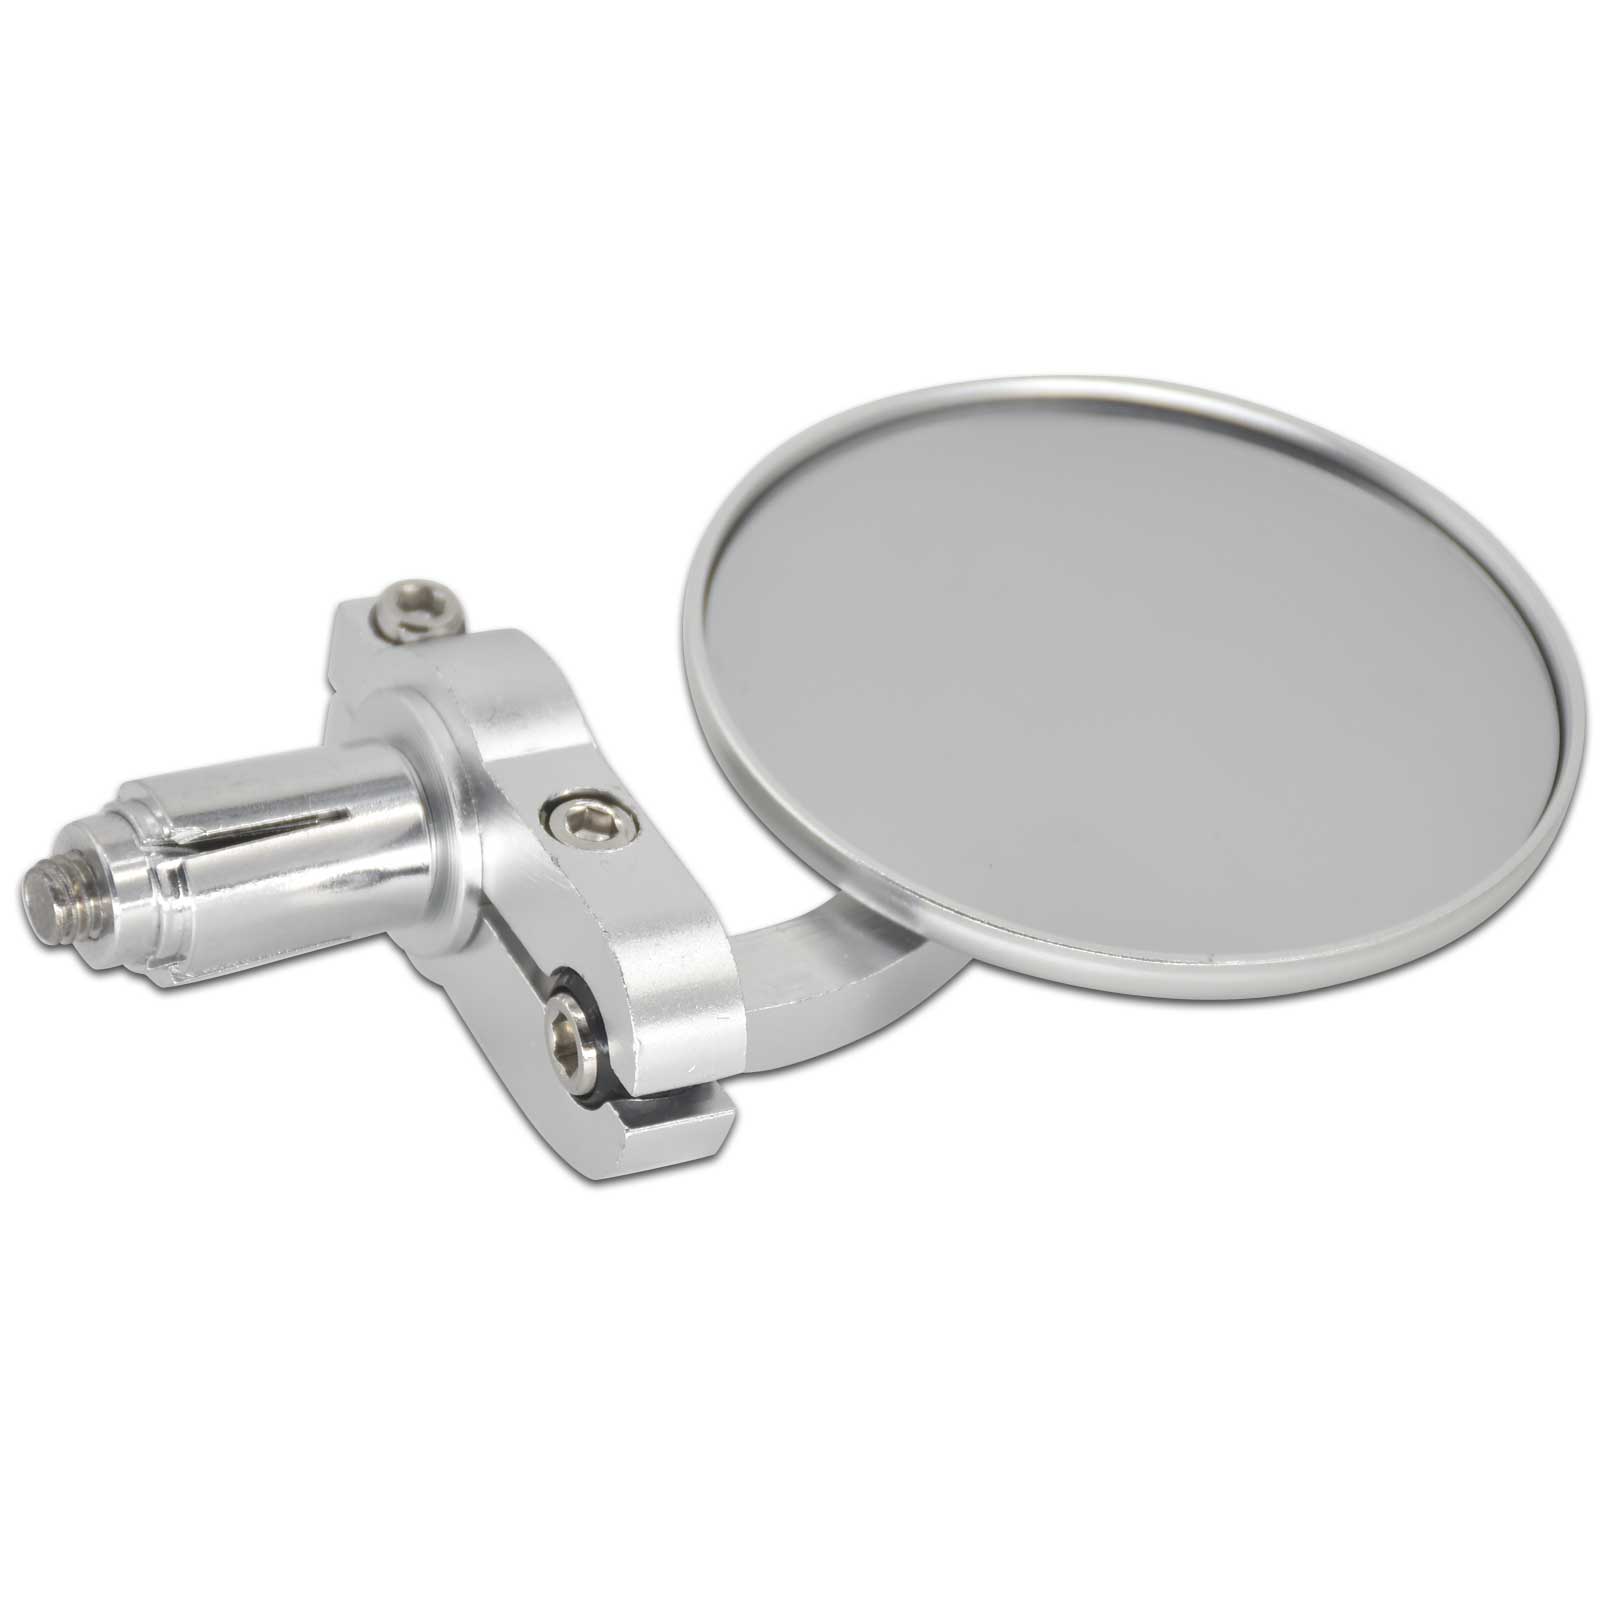 Aluminum CNC Micro Bar End Mirror - Silver